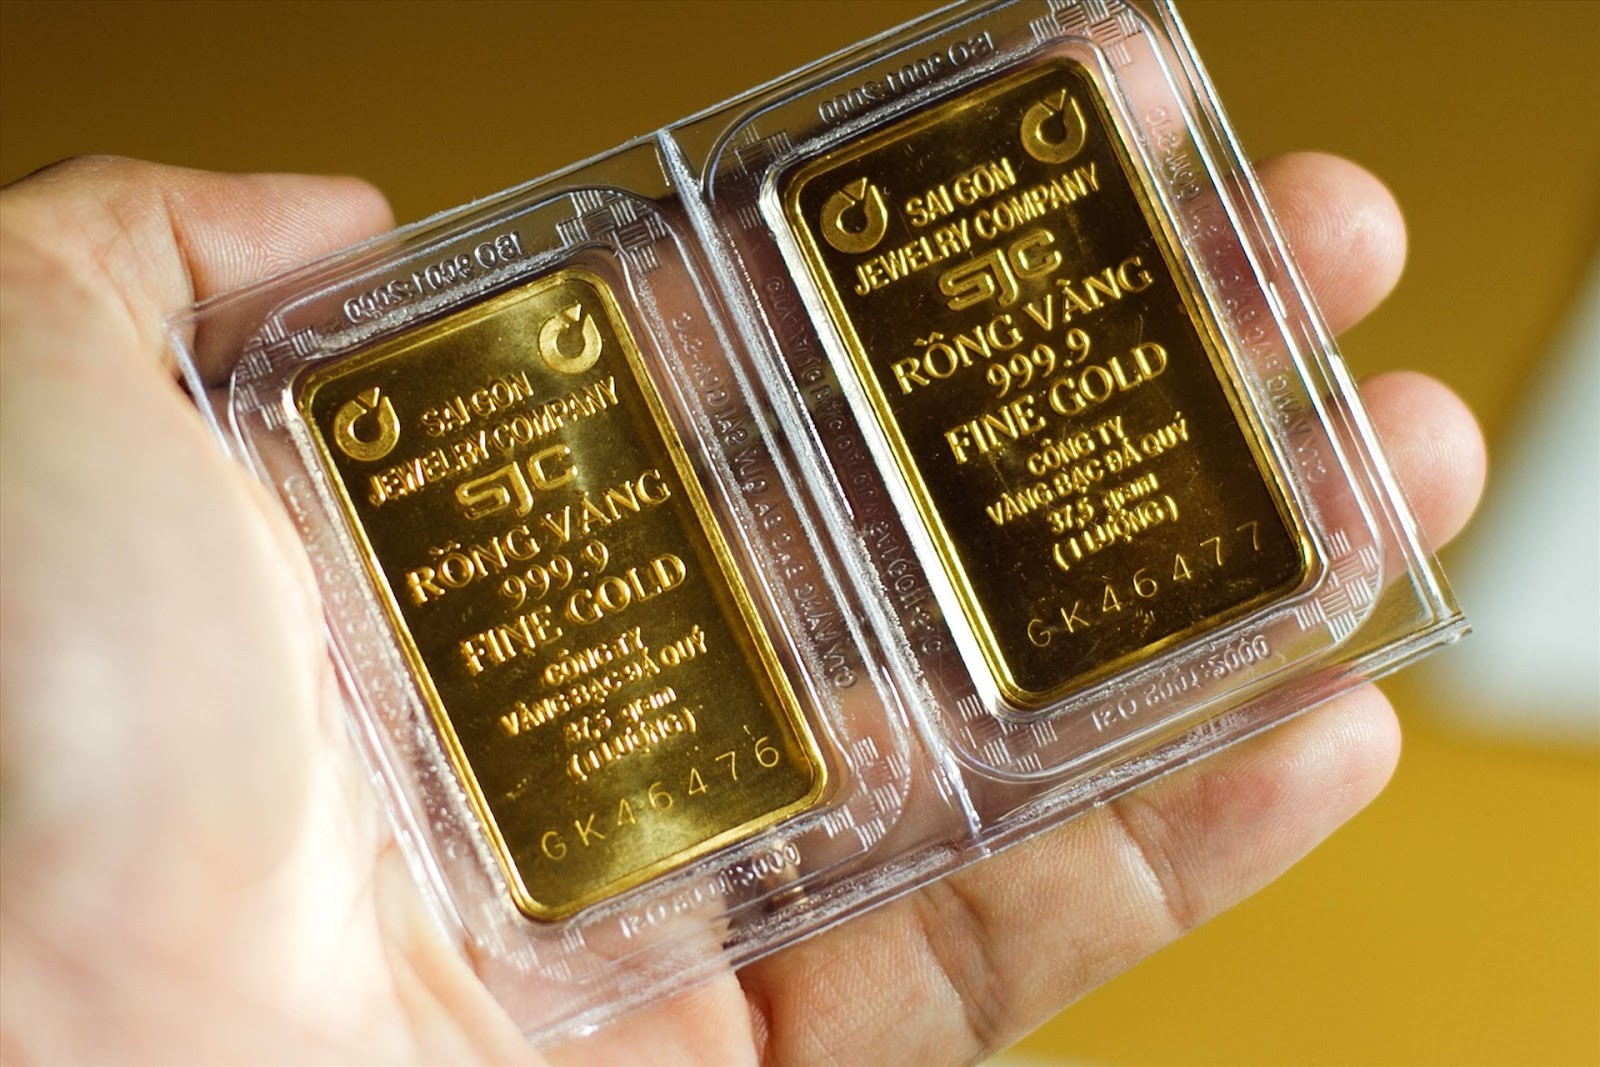 
Trên thị trường có nhiều loại vàng khác nhau và có cách phân biệt chất lượng vàng dựa vào tuổi vàng và độ nguyên chất của vàng
